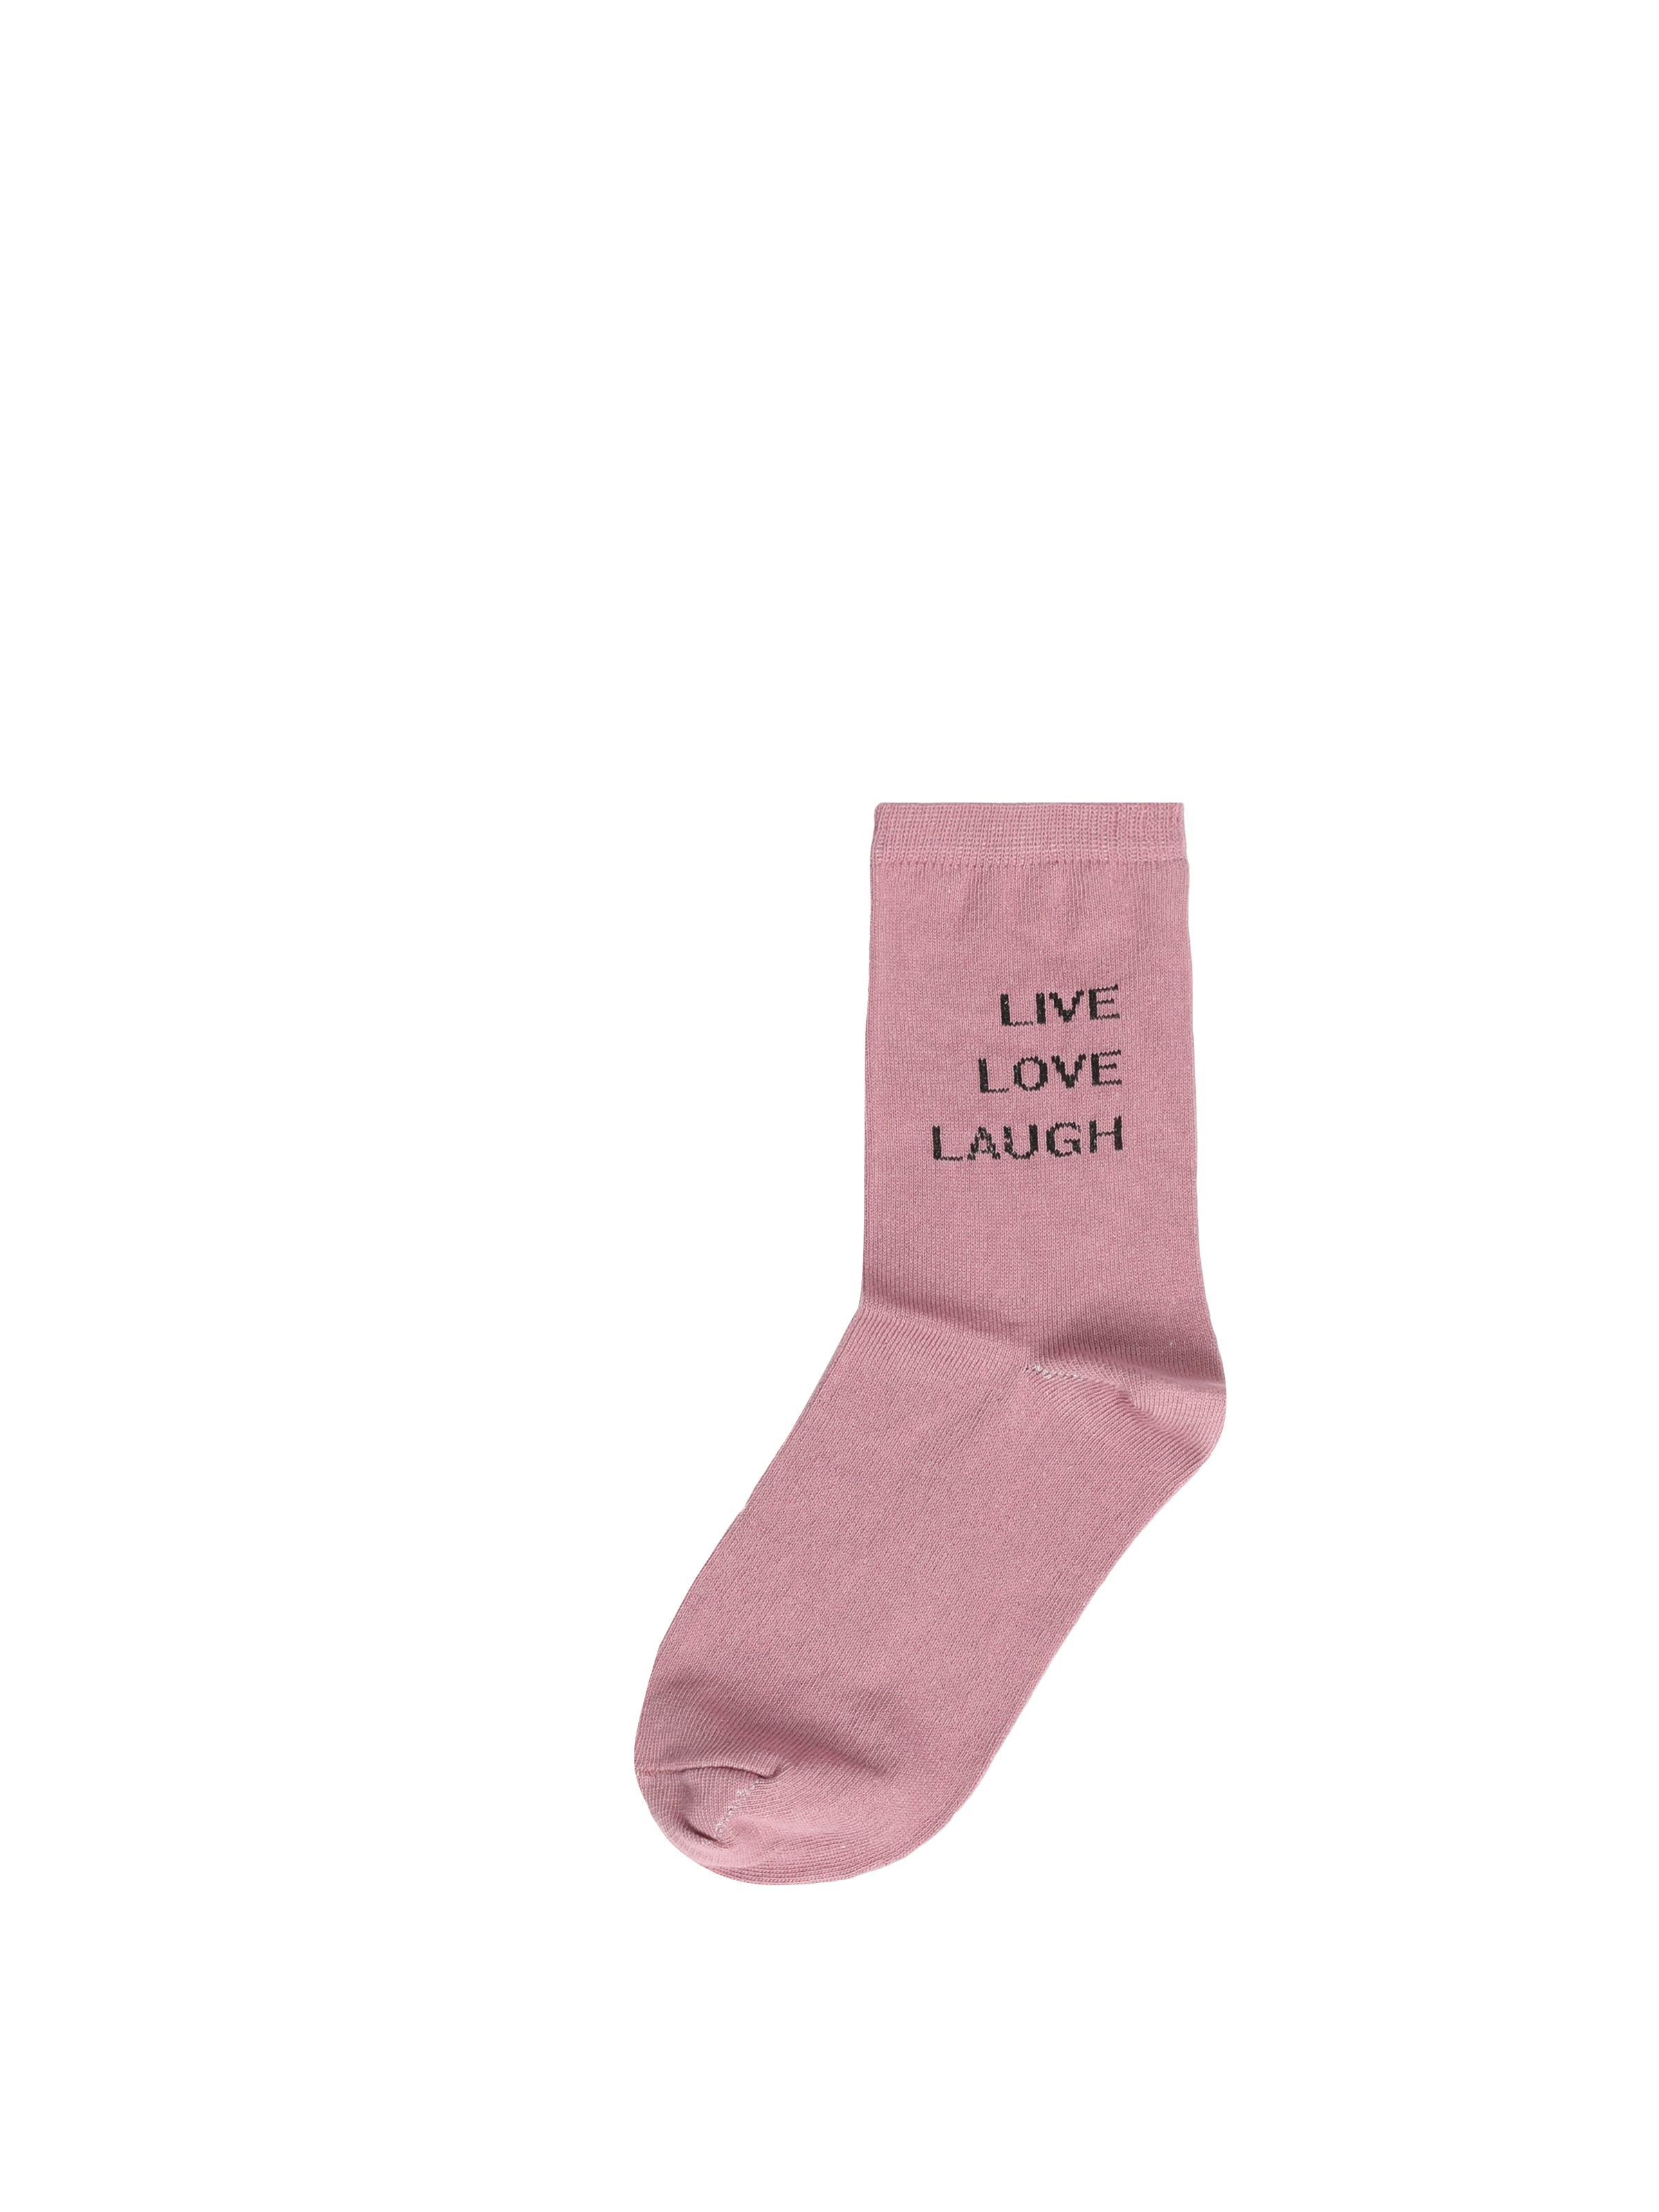 Kadın Pembe Çorap